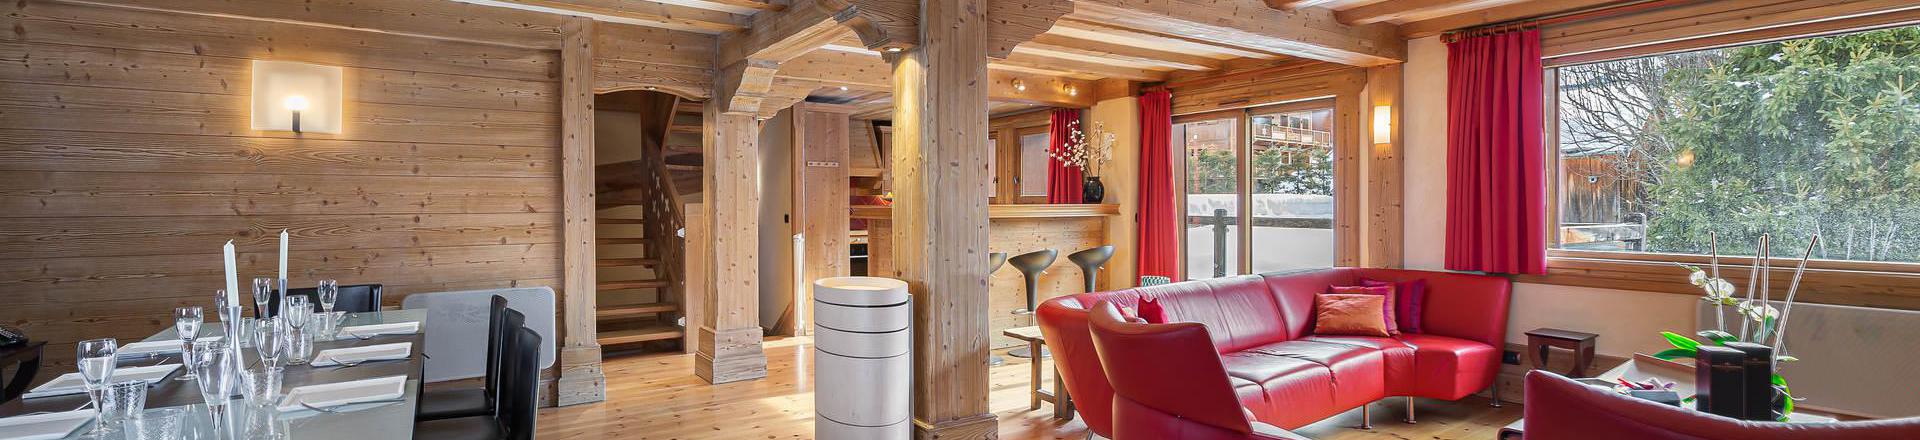 Rent in ski resort 6 room triplex chalet 10 people - Chalet la Grange à Gégé - Méribel - Apartment